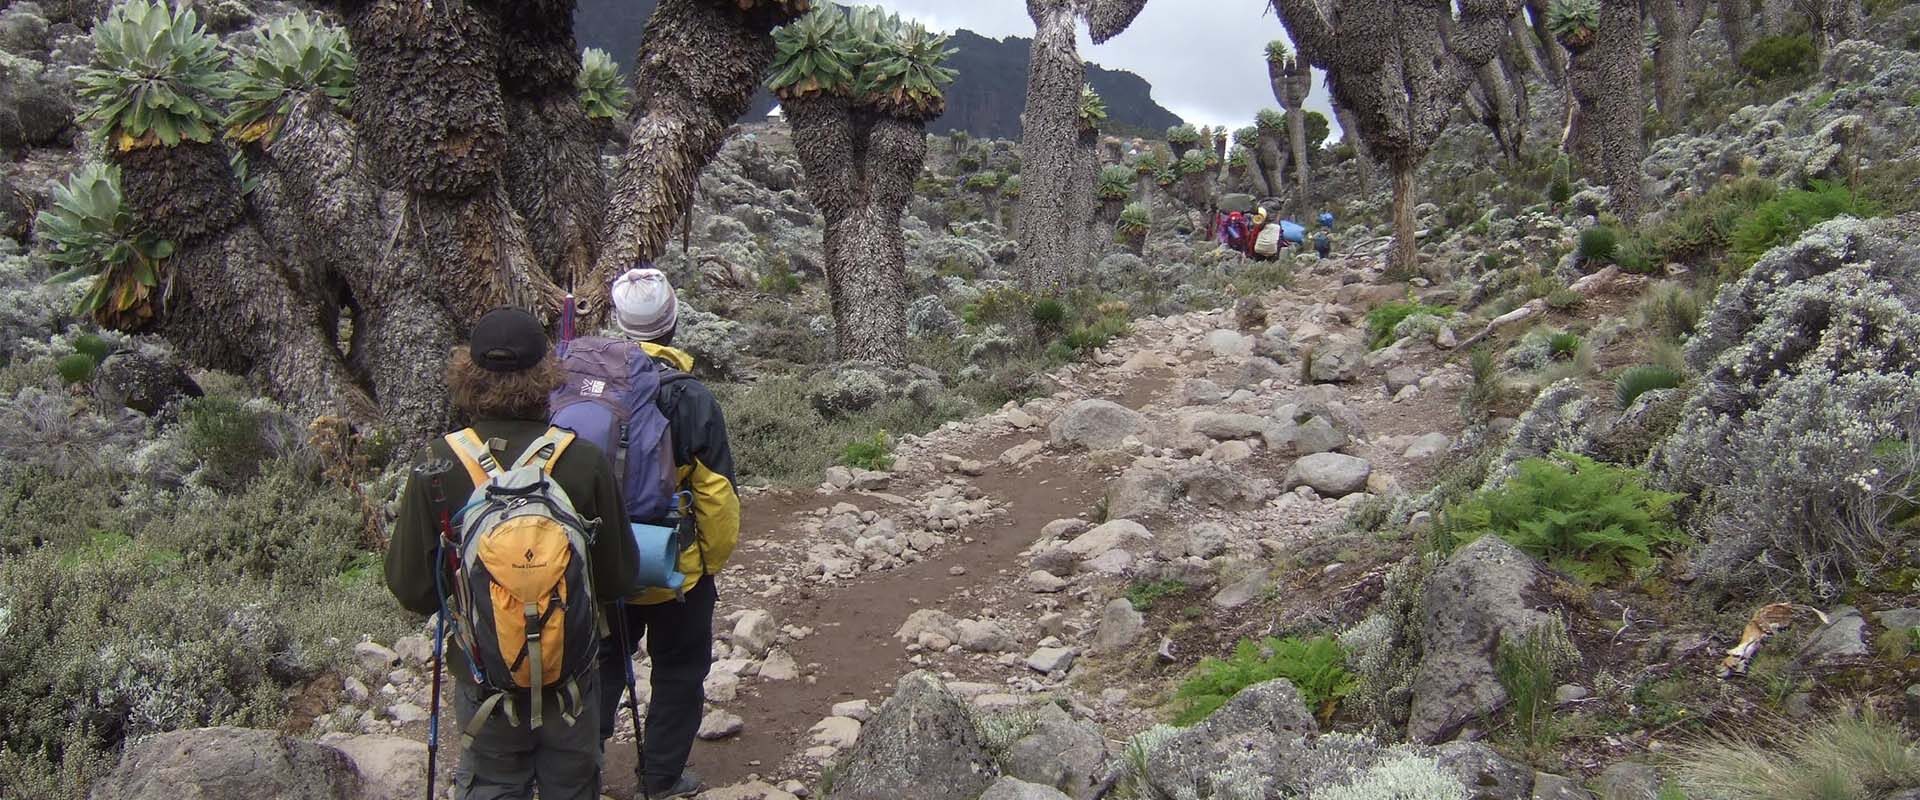 Wanderer mit Rucksäcken laufen auf Wanderweg mit Felsen und Bäumen